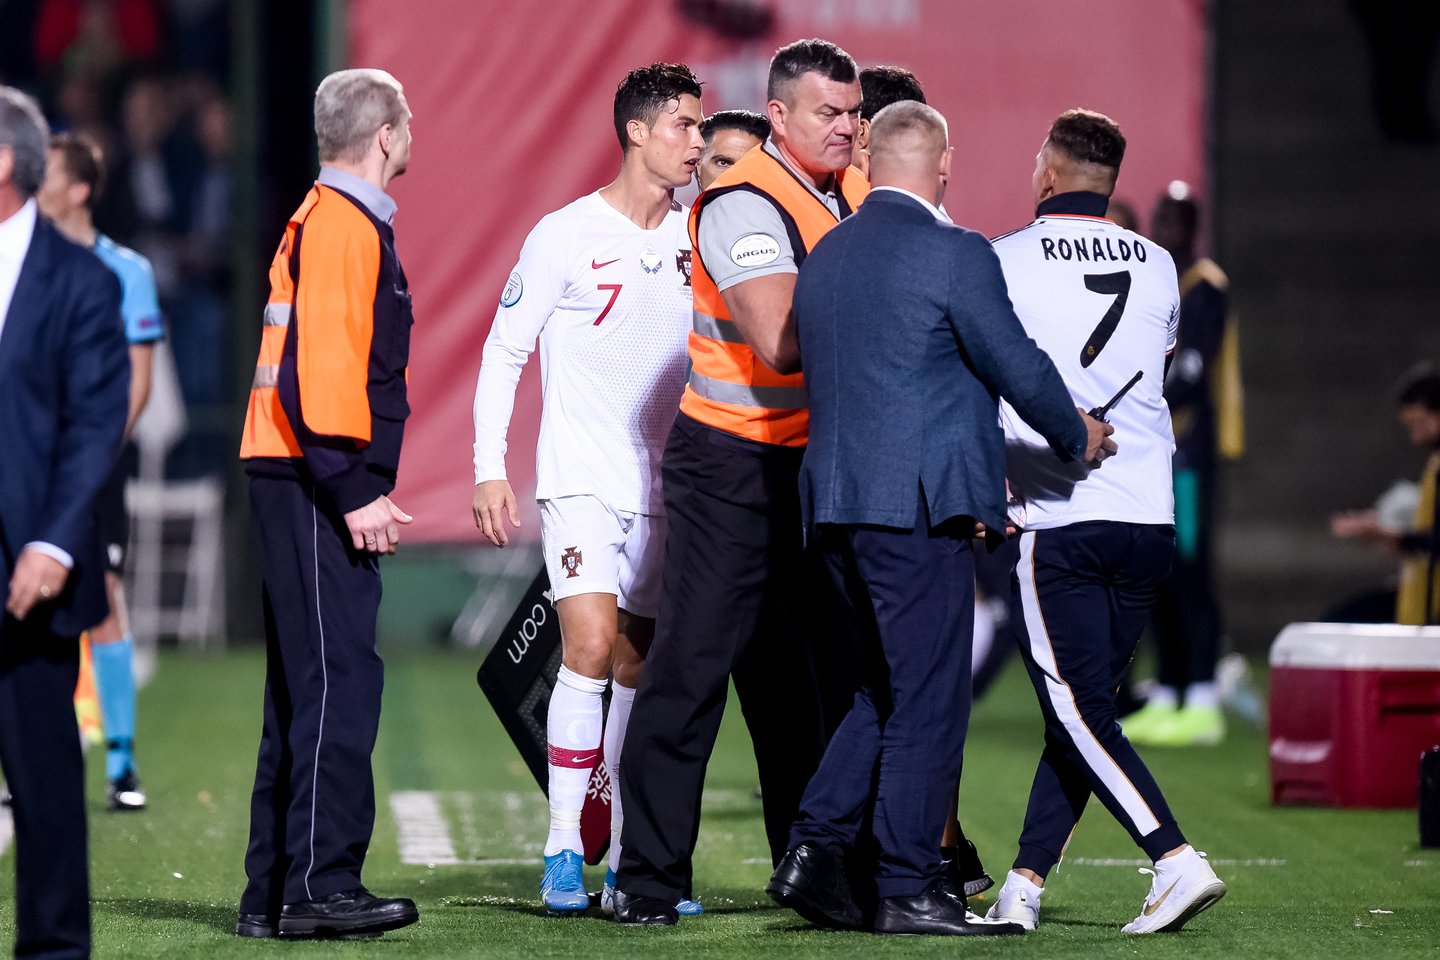 A.Gadeikis, kuris per Lietuvos ir Portugalijos futbolininkų rungtynes Vilniuje rugsėjo 10-ąją įsiveržė į aikštę ir atsiklaupė prieš C.Ronaldo, kartu su mūsų šalies rinktine tuo pačiu užsakytu lėktuvu atskrido į Portugaliją.<br>D.Umbraso nuotr.